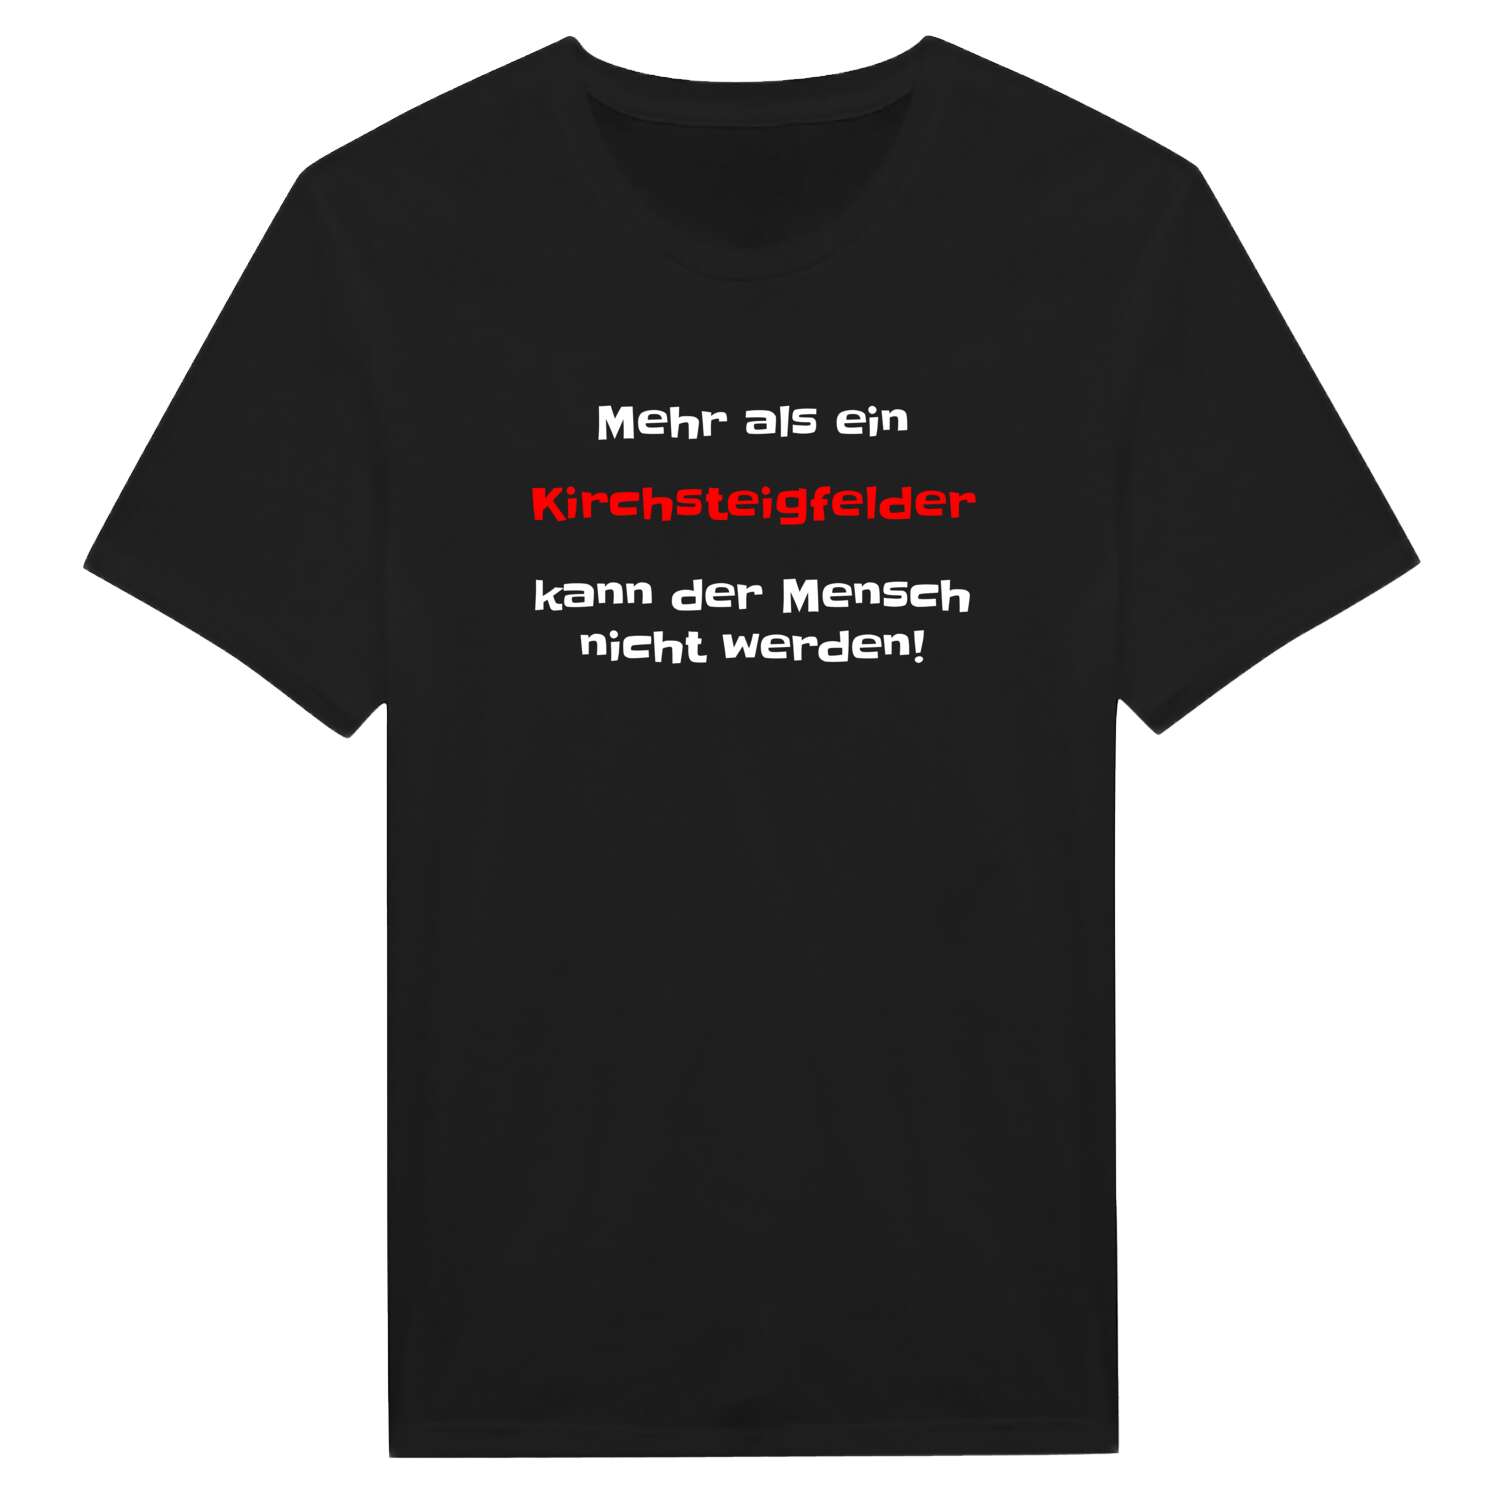 Kirchsteigfeld T-Shirt »Mehr als ein«